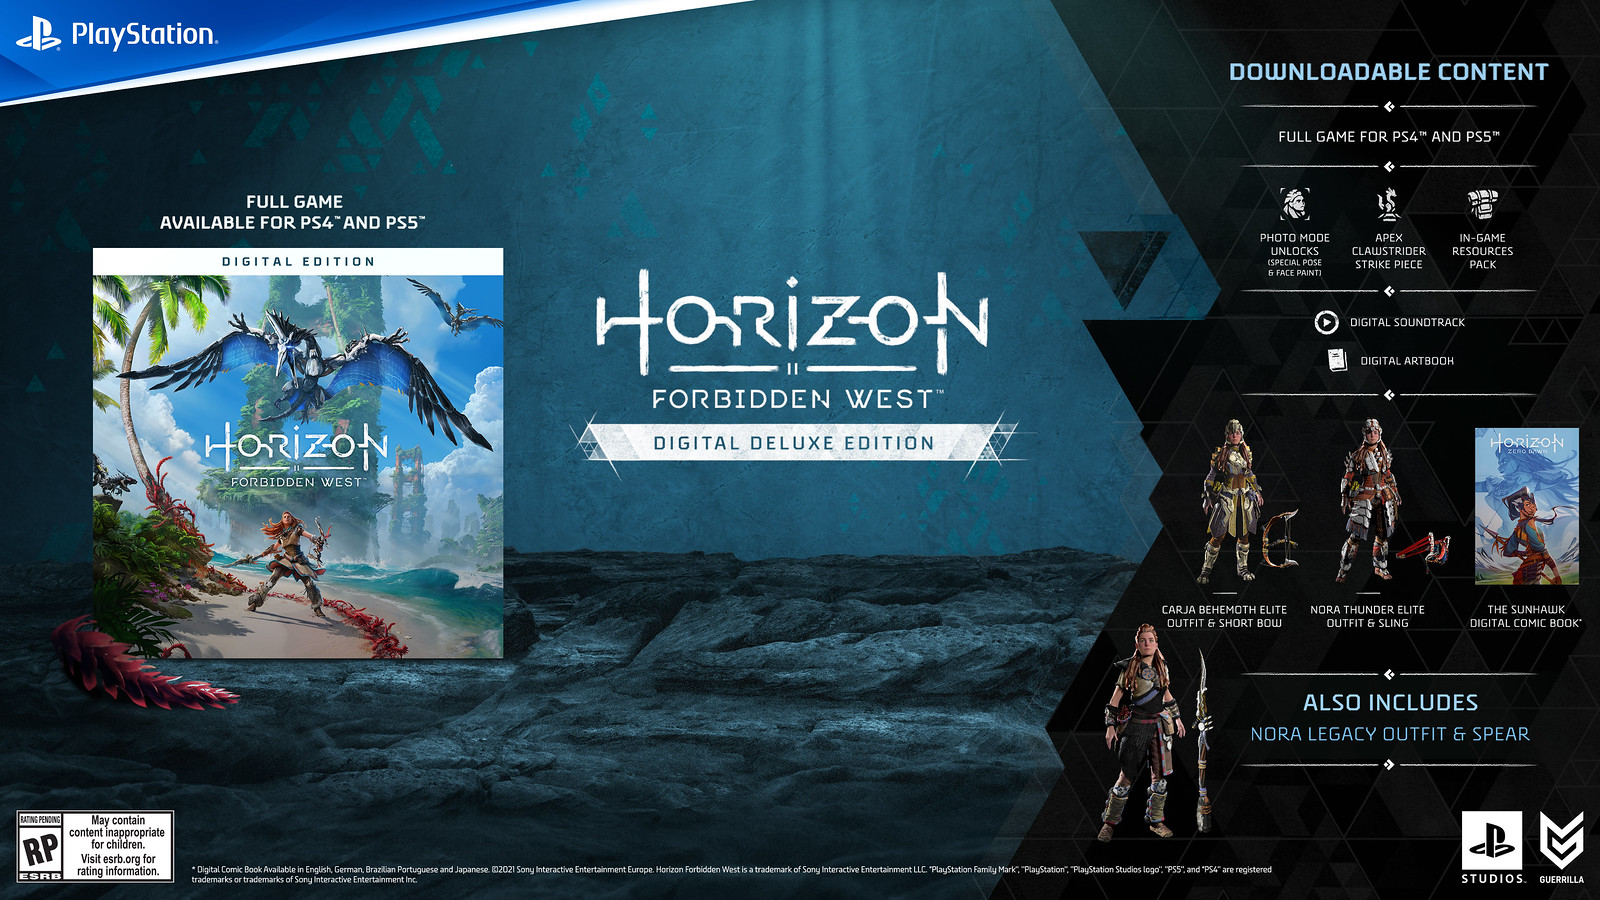 Horizon II Forbidden West digital deluxe